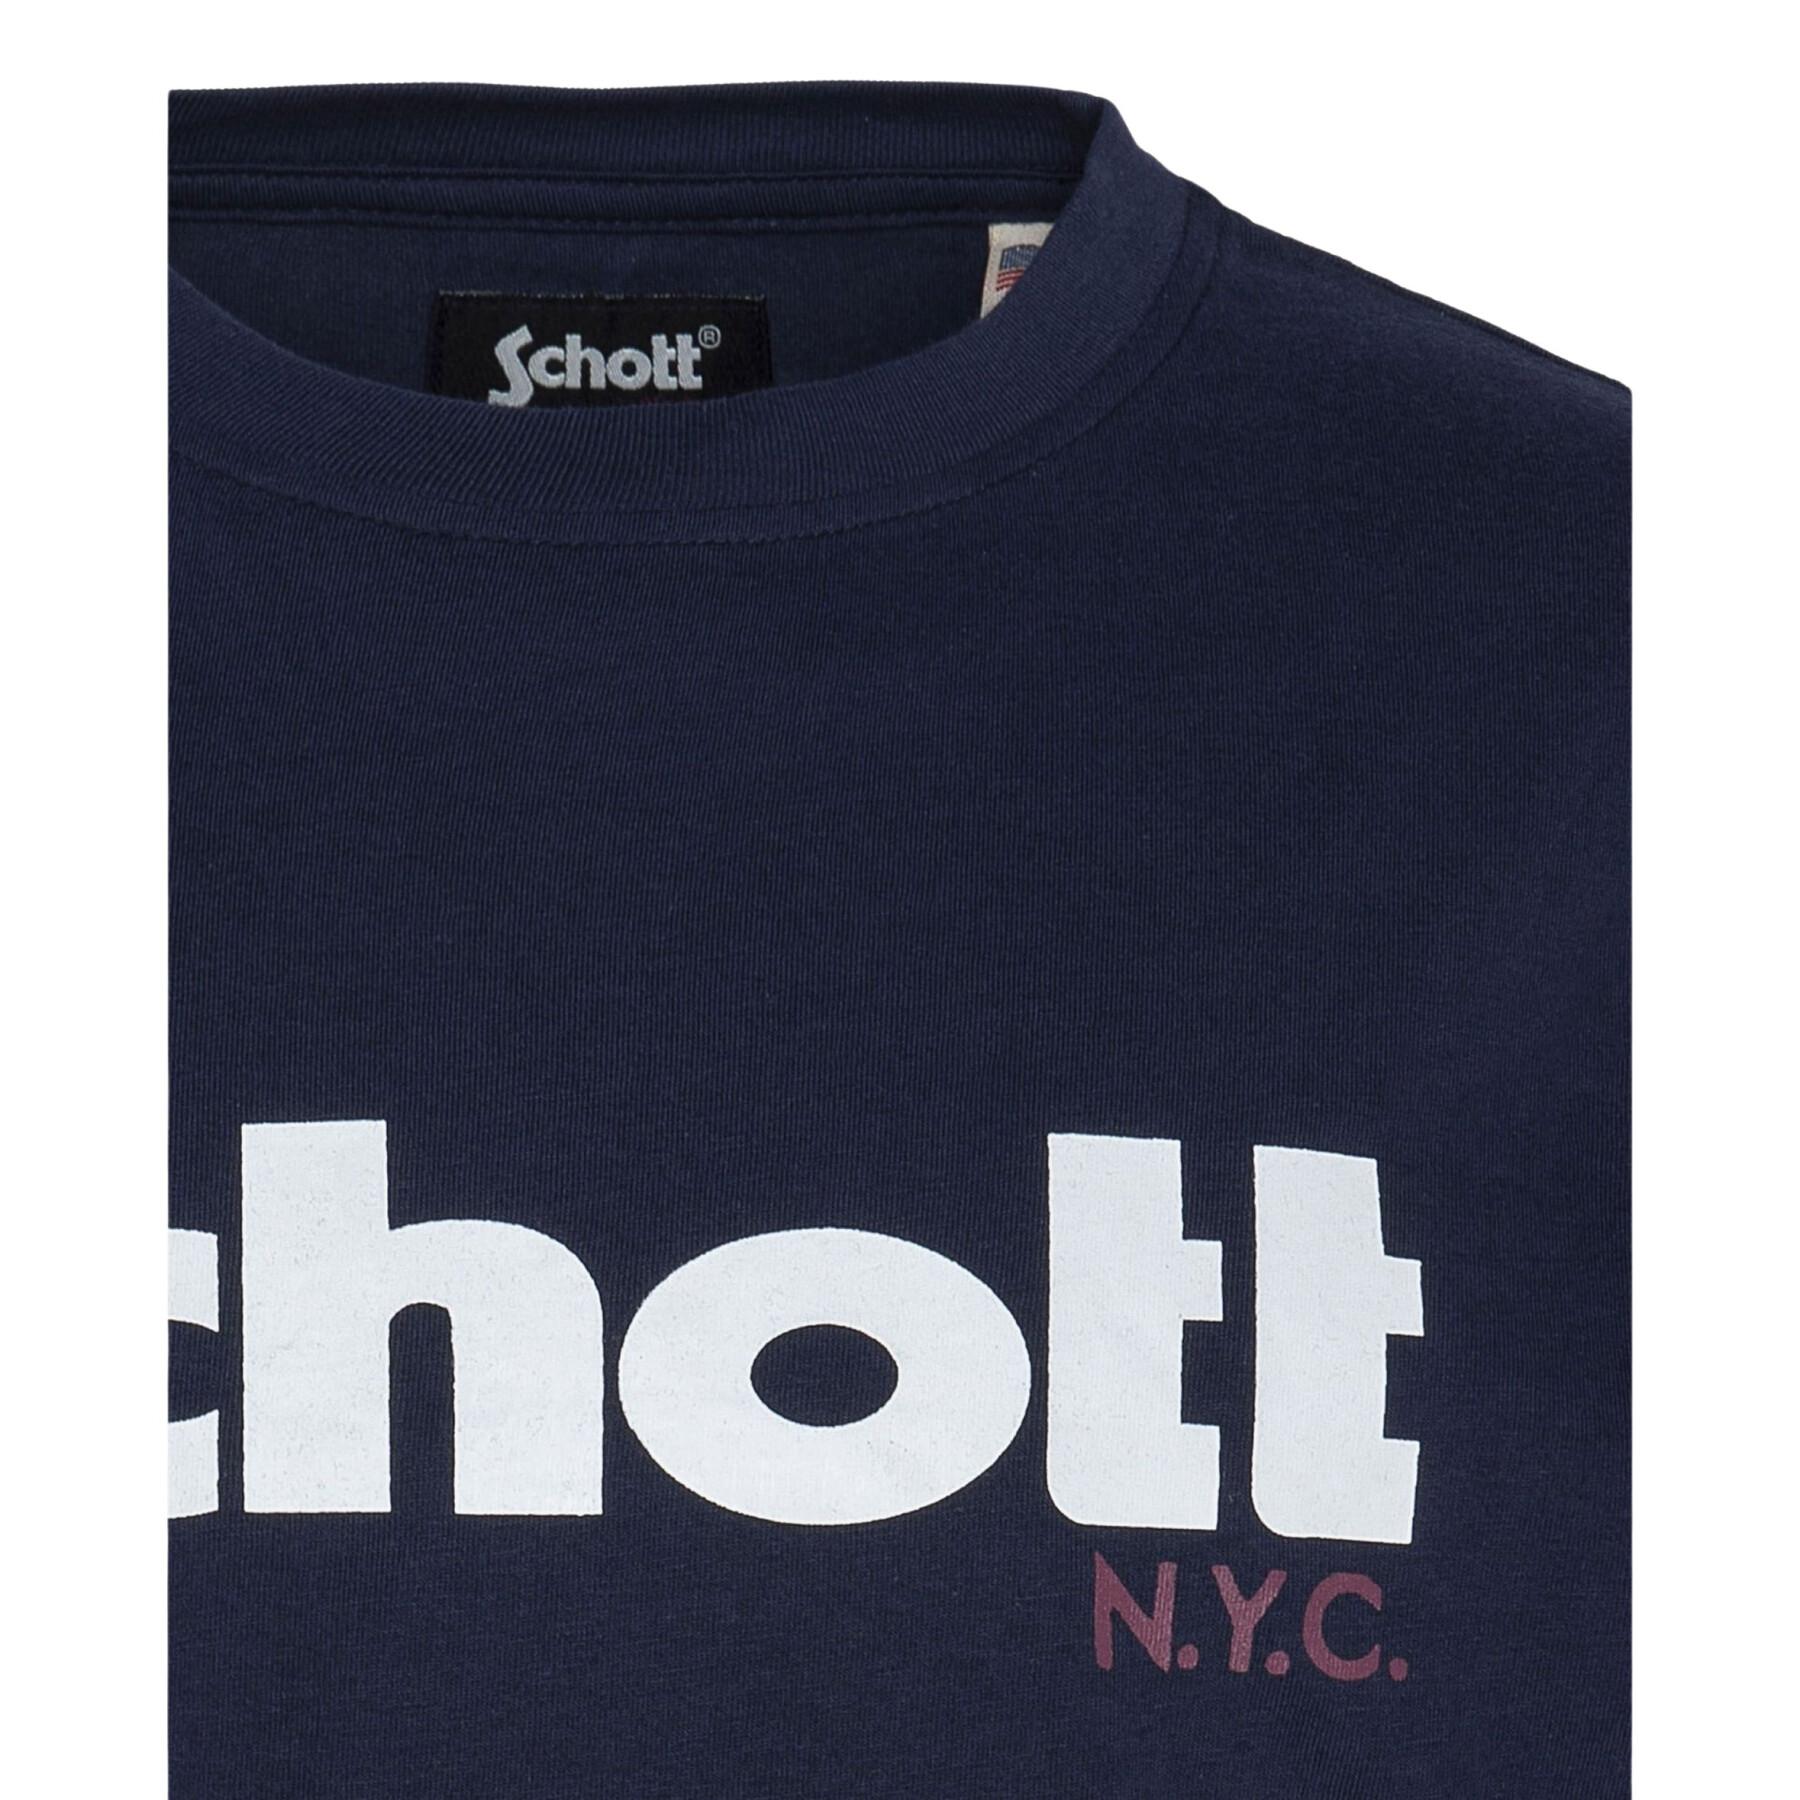 T-shirt com o logotipo da criança Schott